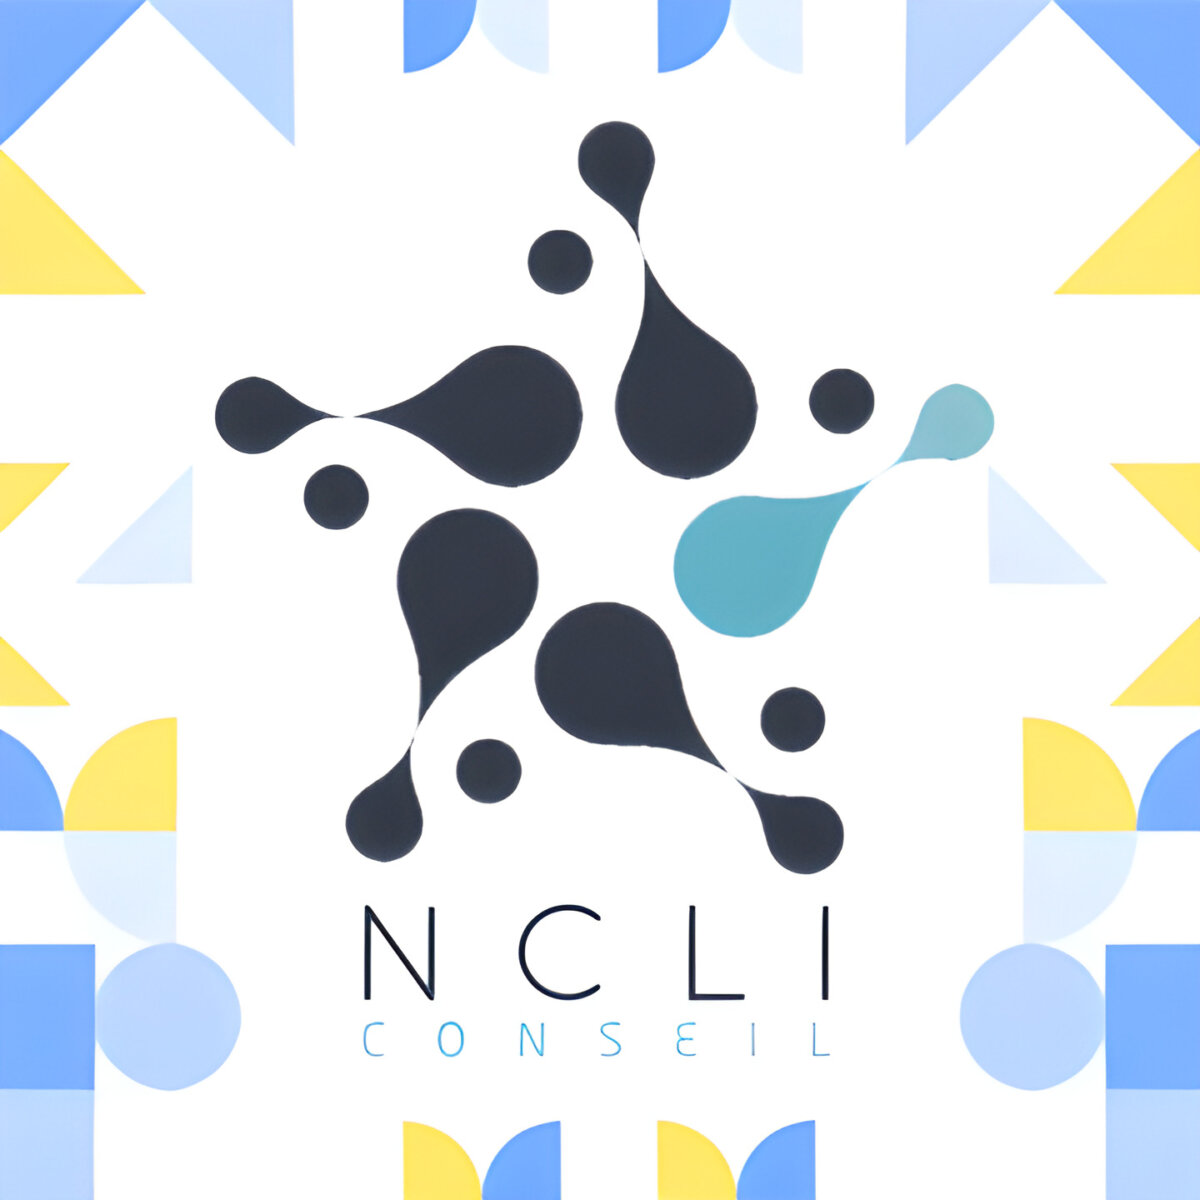 Notre nouveau partenaire : NCLI Conseils